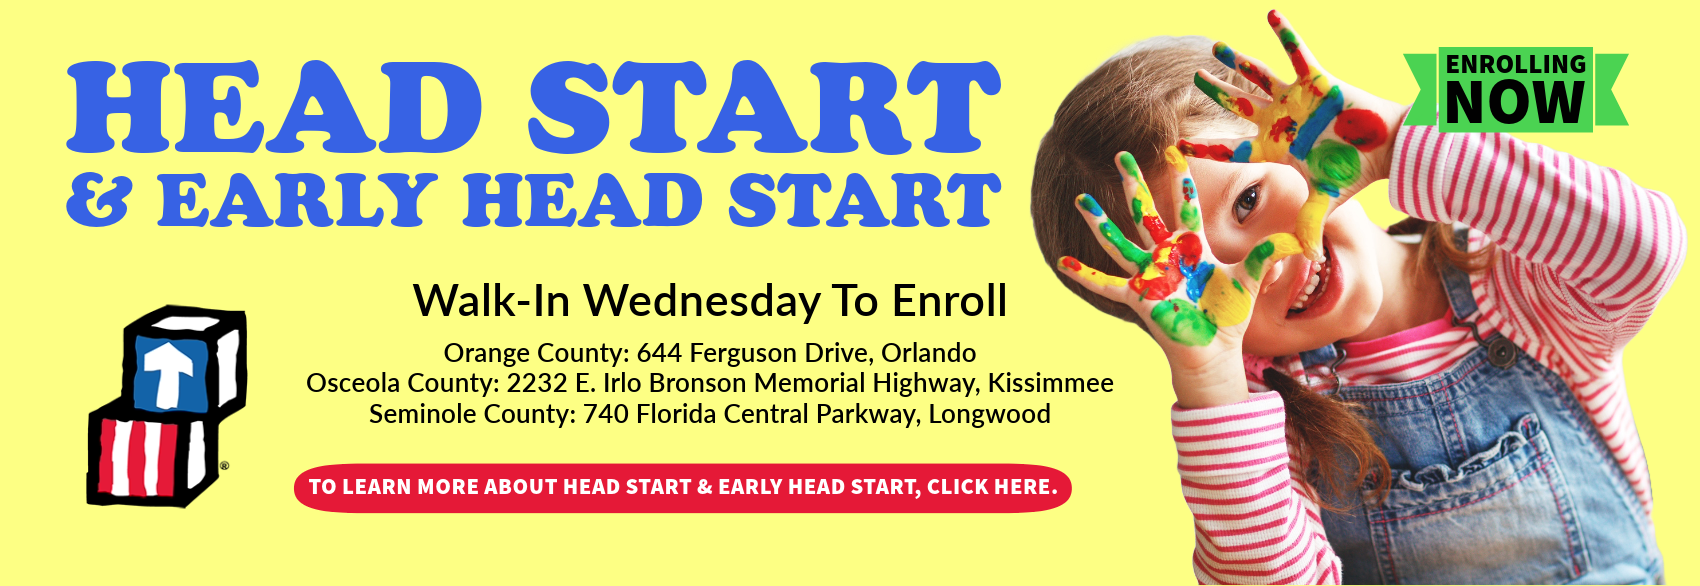 Head Start/Early Head Start